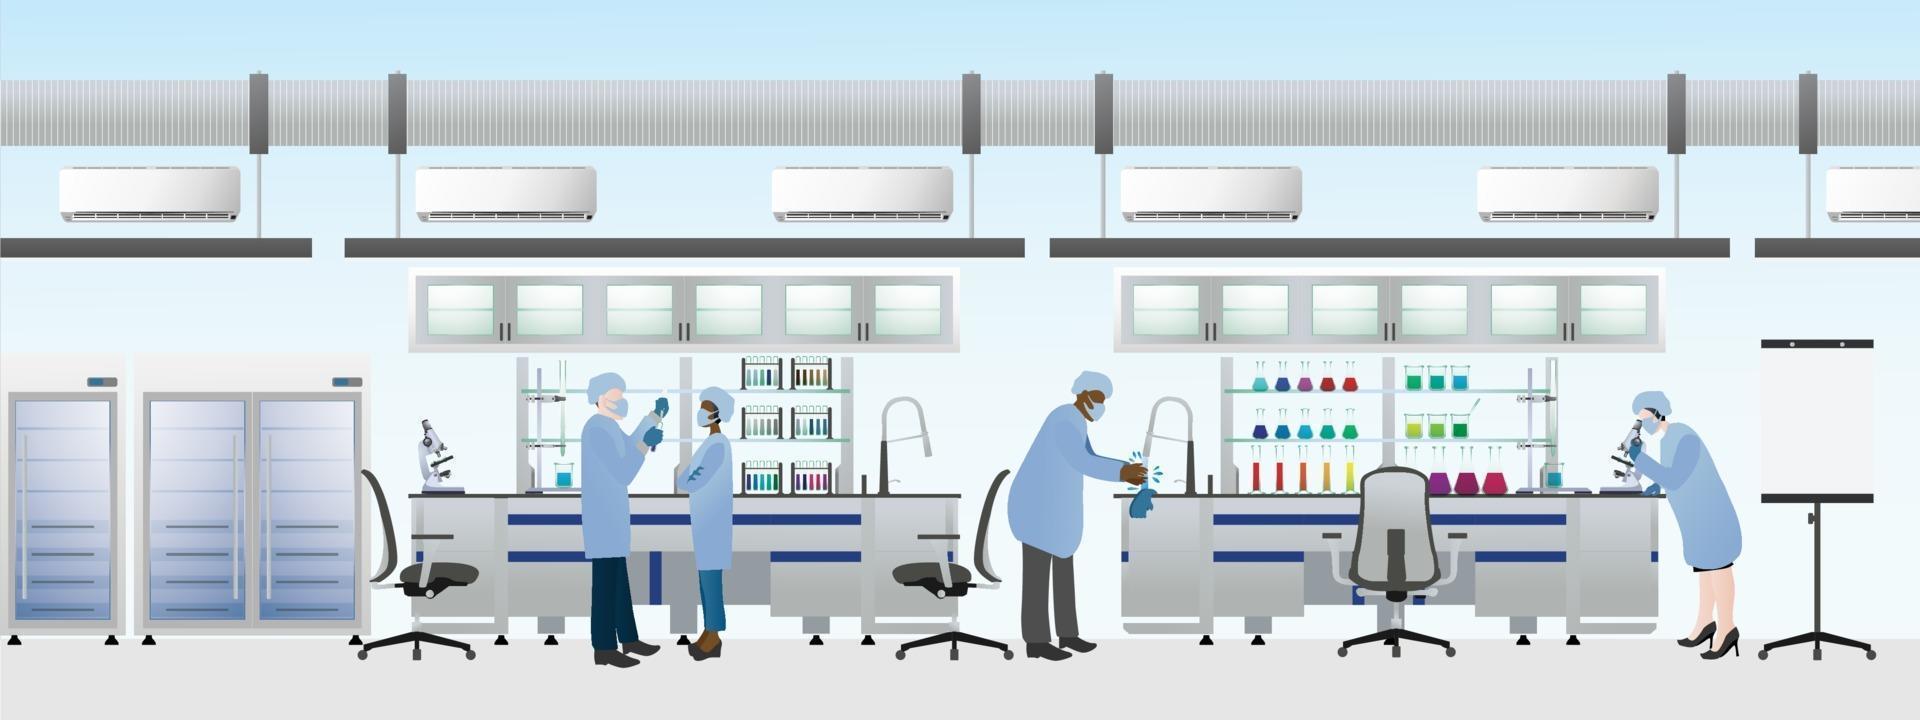 squadra di scienziati che indossa tuta da laboratorio per fare esperimenti chimici, illustrazione vettoriale piatto di laboratorio di scienze.